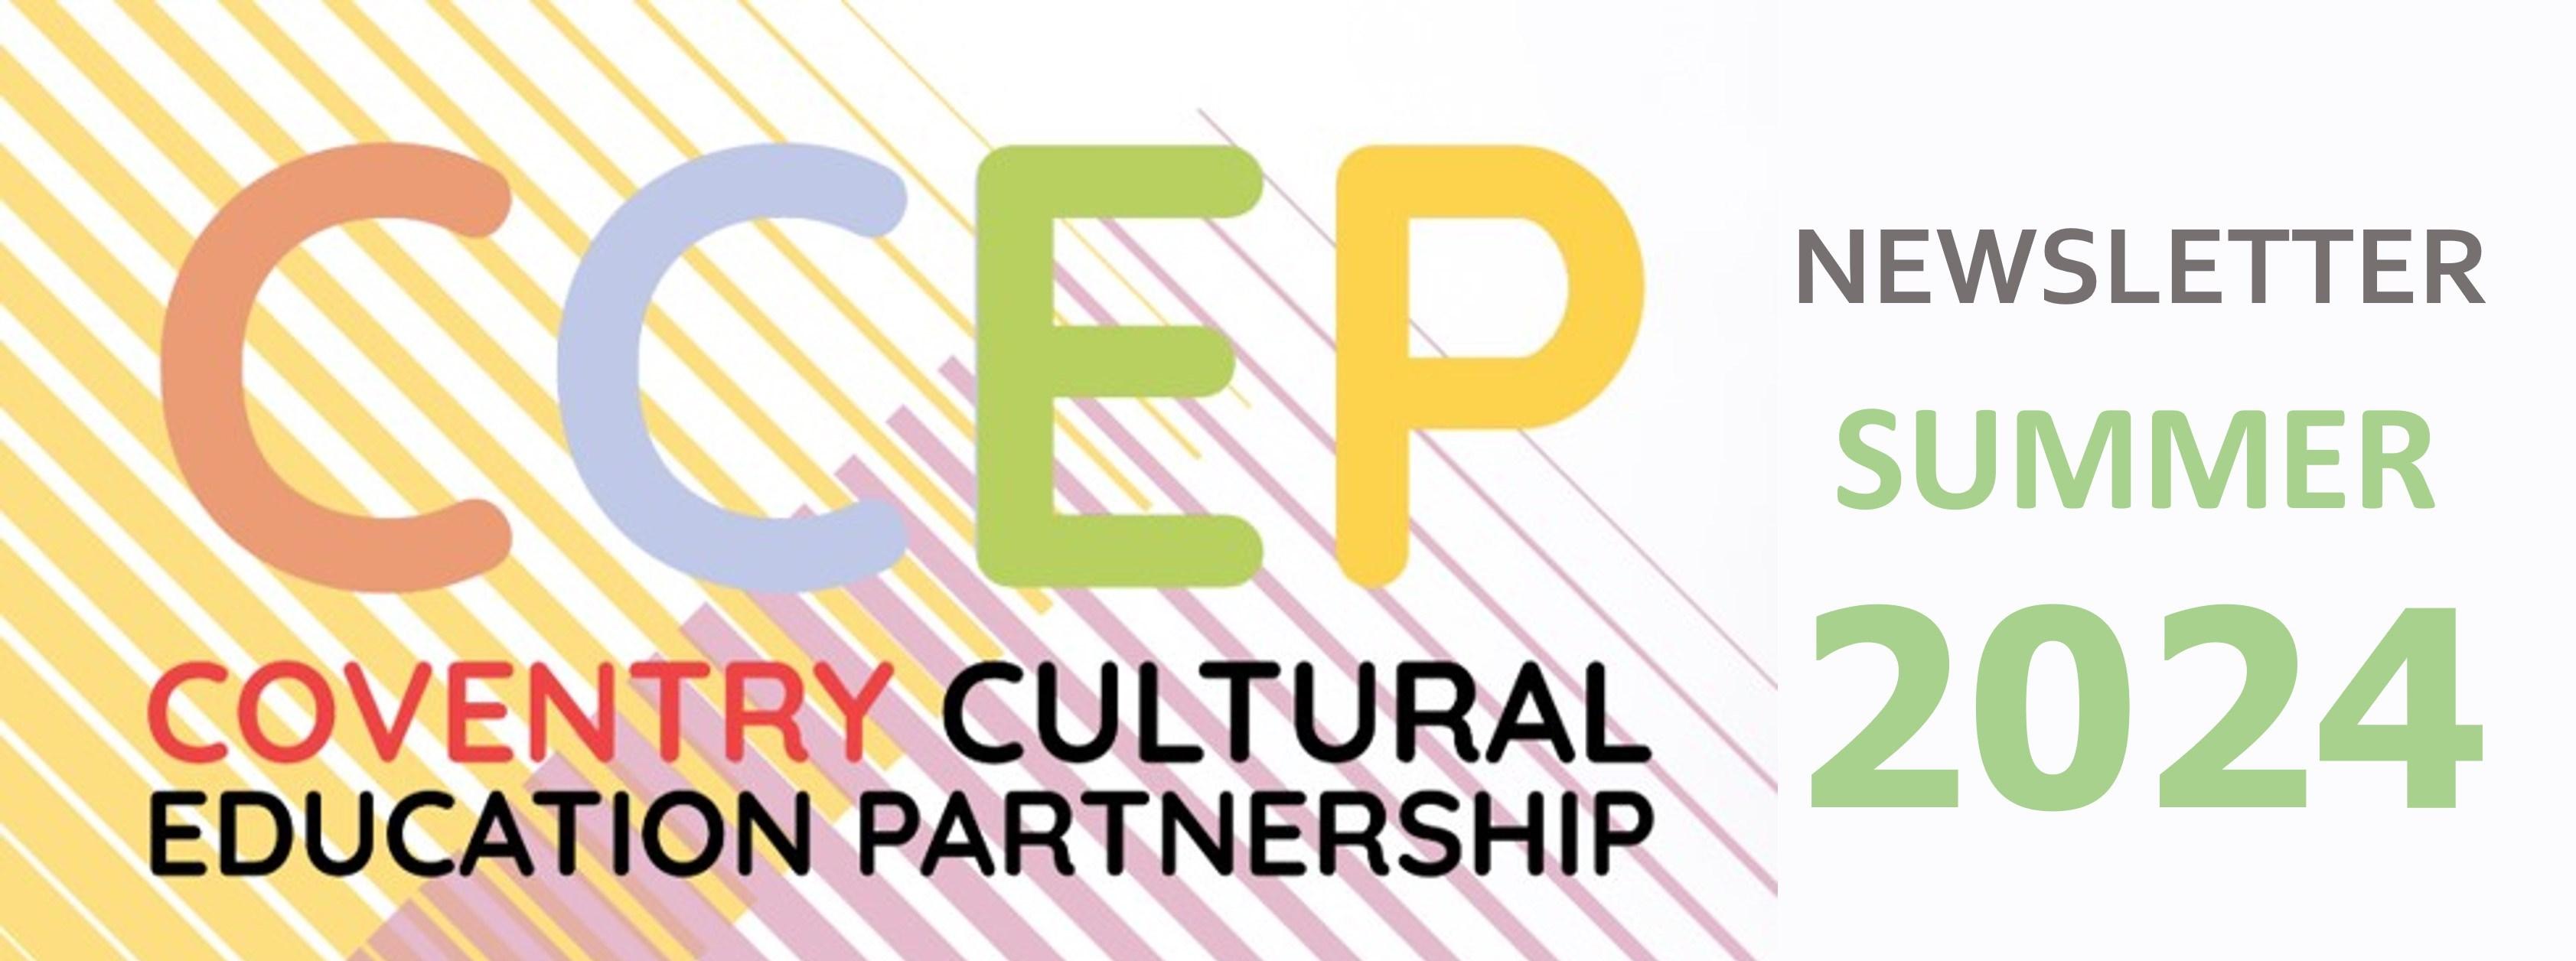 CCEP newsletter logo